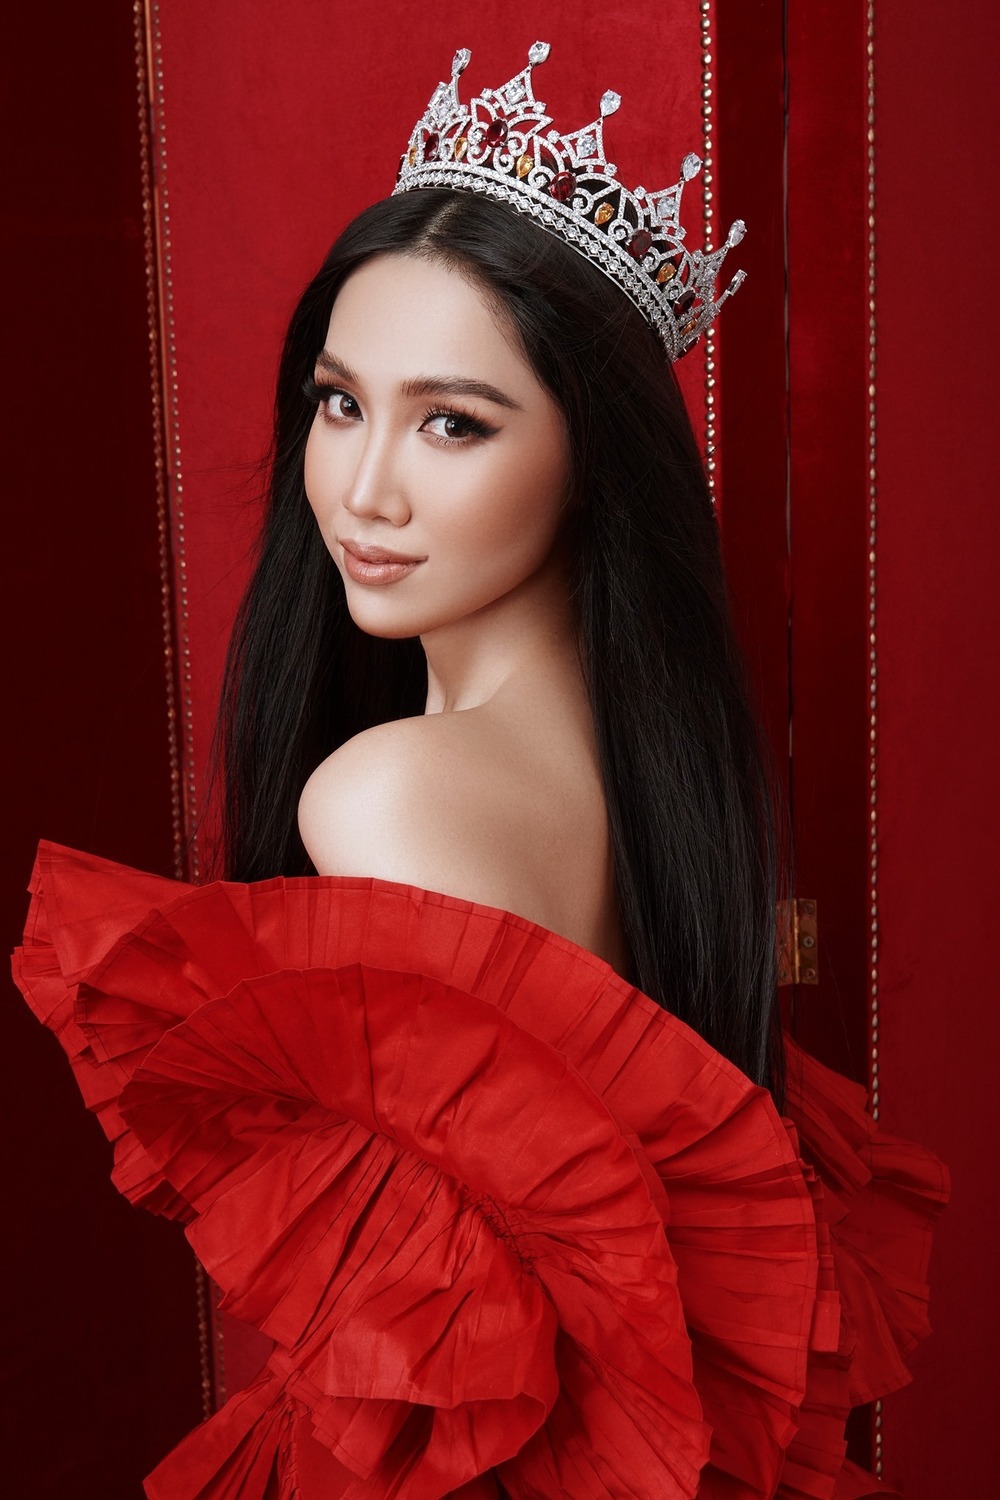  
Từng là Hoa hậu chuyển giới Việt Nam, Top 6 Hoa hậu chuyển giới Quốc tế nhưng Nhật Hà vẫn tạm gác vương miện để chinh phục cột mốc cao hơn (Ảnh: FBNV).